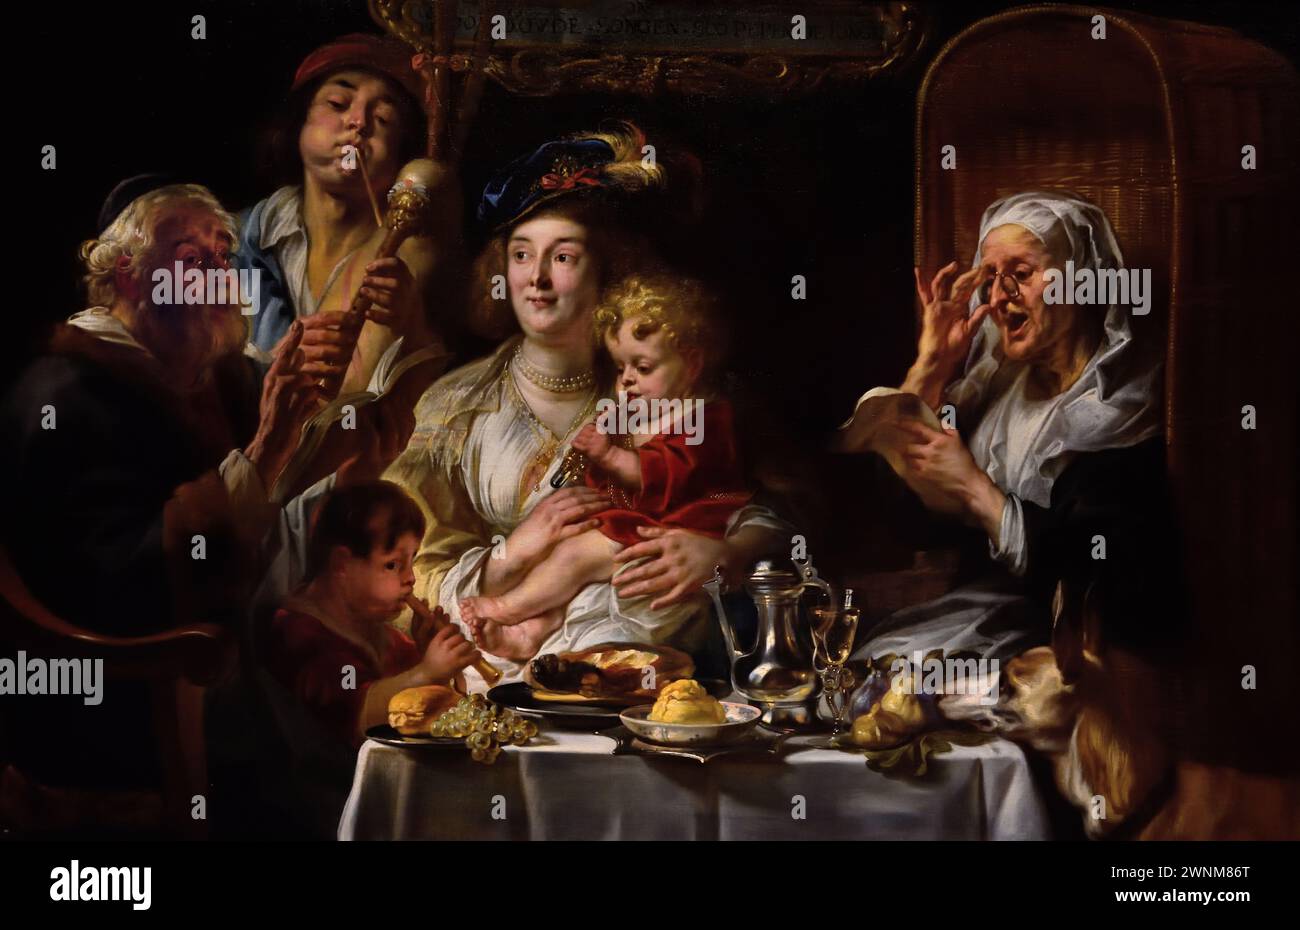 Come il Vecchio Sang, so Pipe the Young, Jacob Jordaens, (1593-1678) pittore barocco fiammingo del XVII secolo belga, Museo reale di Belle Arti, Anversa, Belgio, Belgio Foto Stock